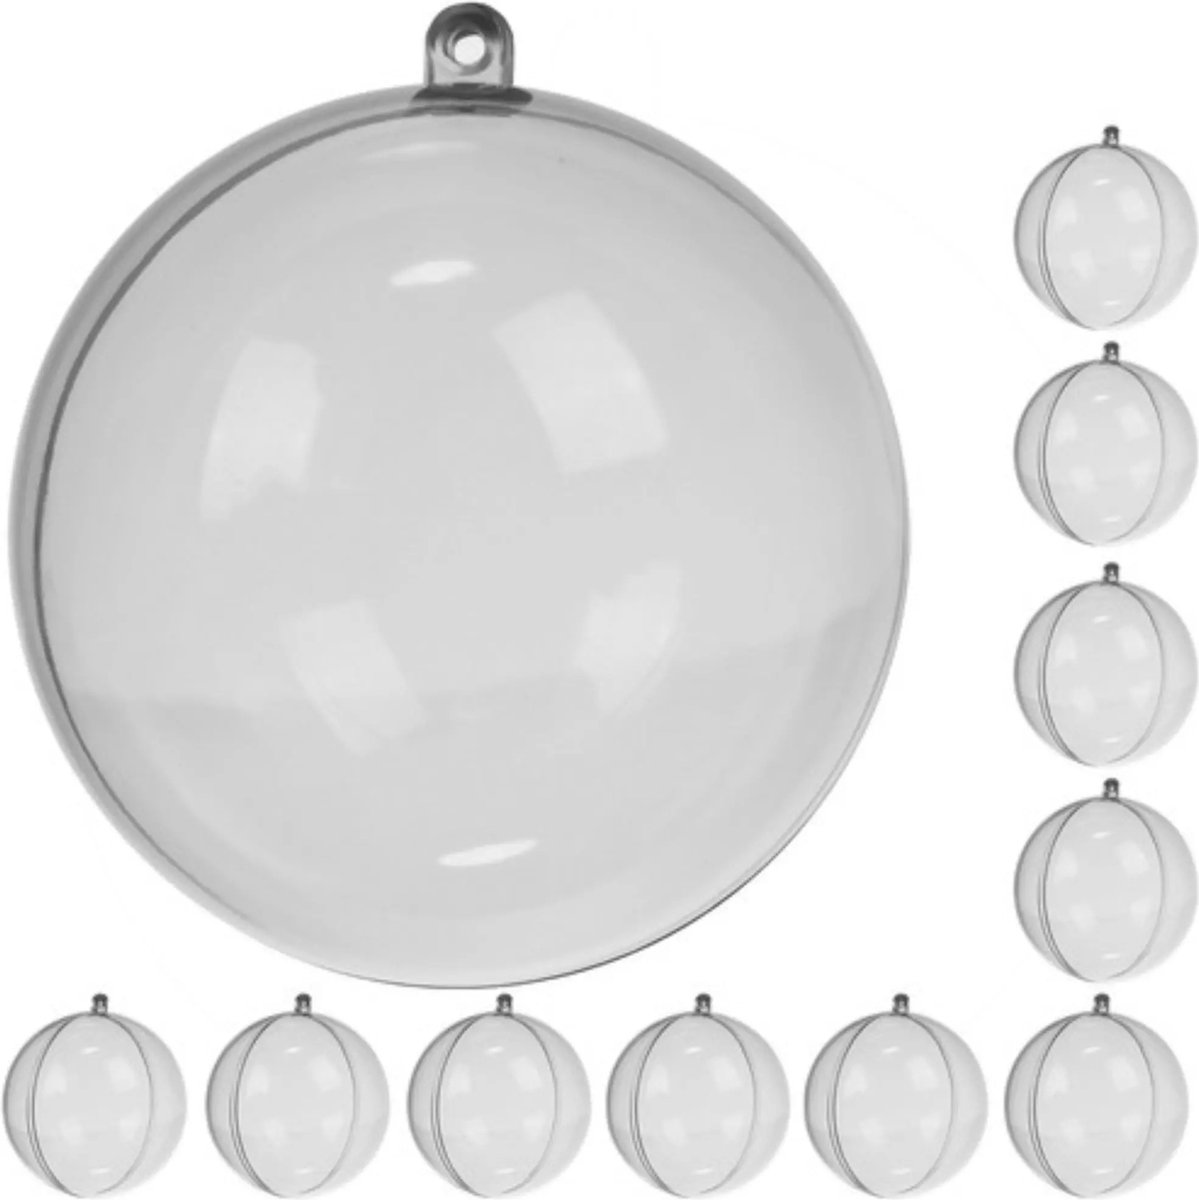 Transparante kerstballen 10cm set van 10 stuks Ruhhy 22277